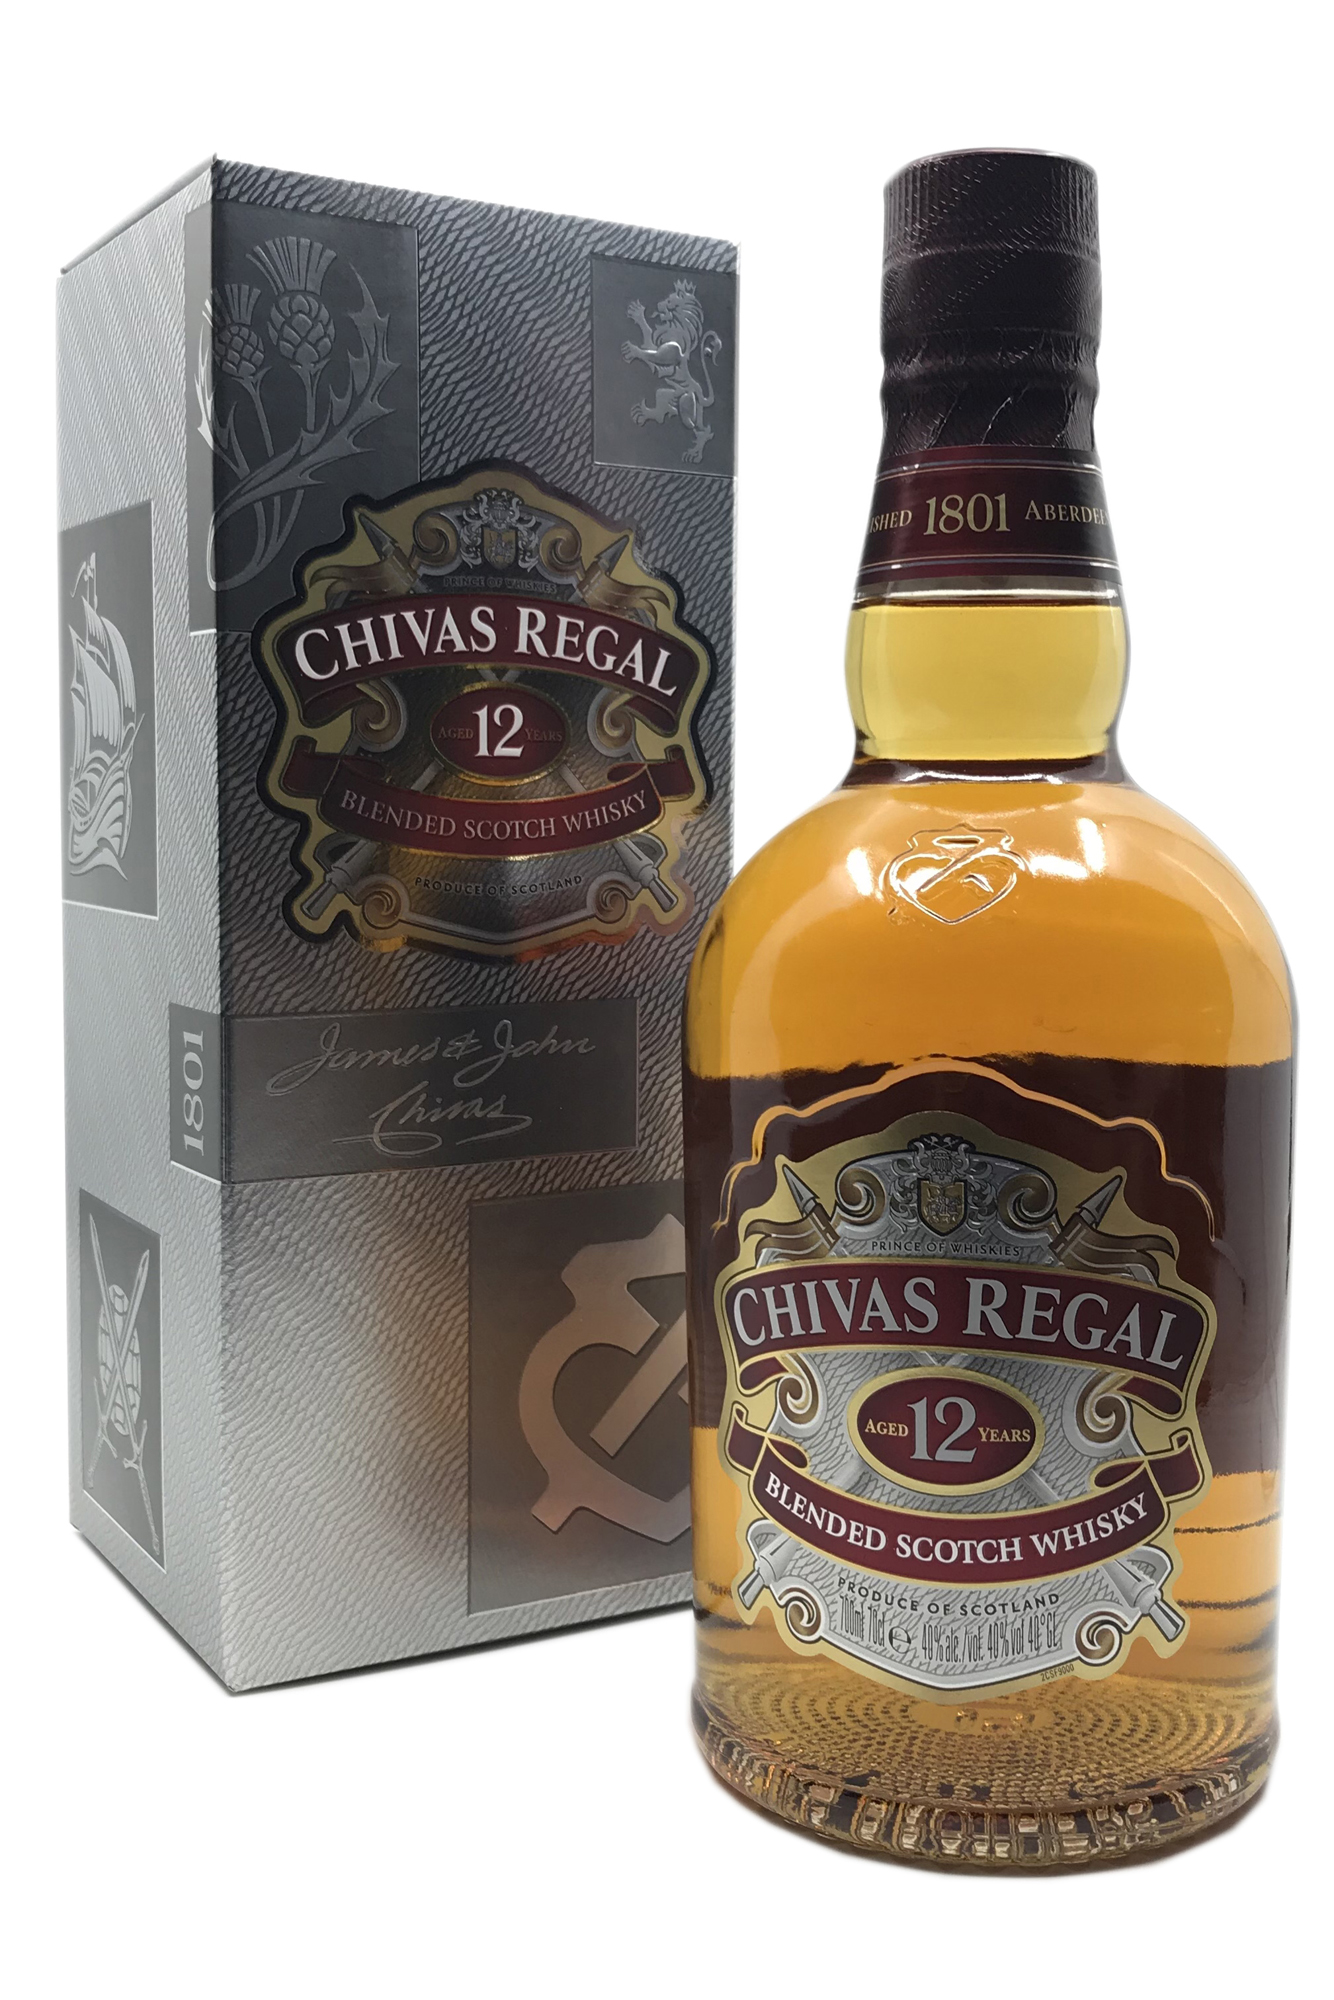 Chivas Regal 12 Jahre Premium Blended Scotch Whisky - 40% vol. Alk. - 0,7l - front